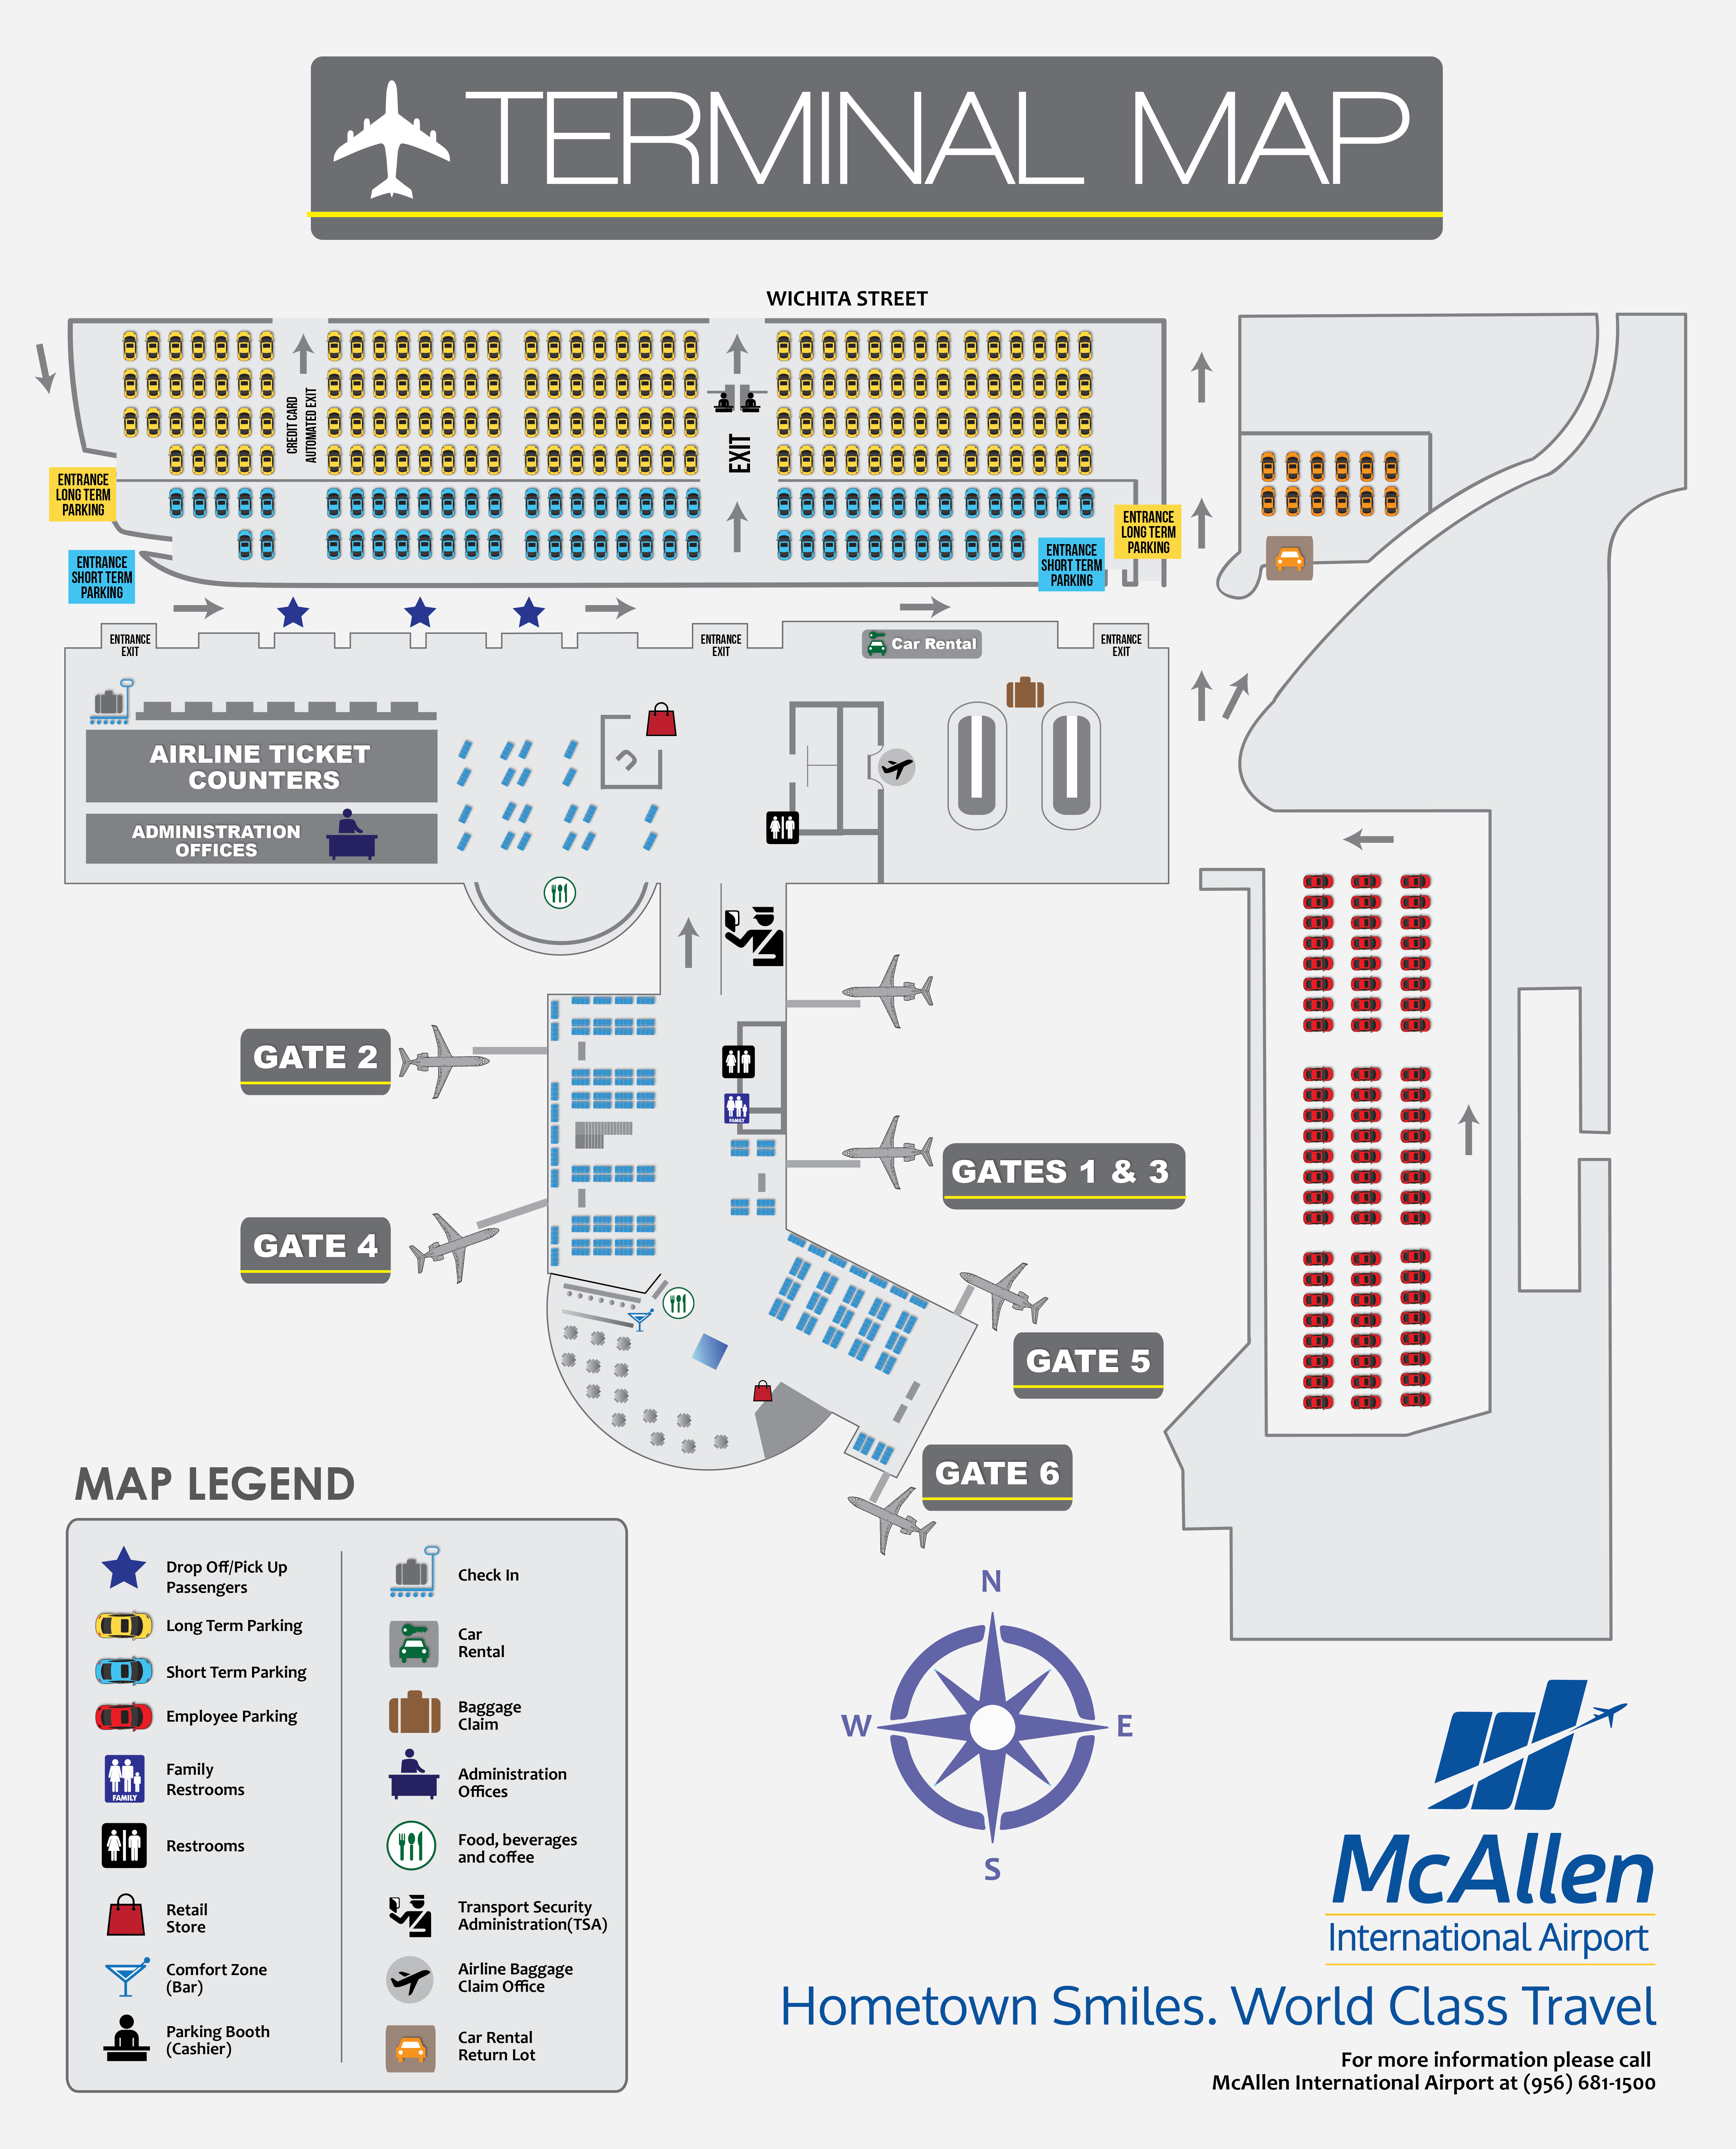 welcome to the mcallen airport site - mcallen, tx